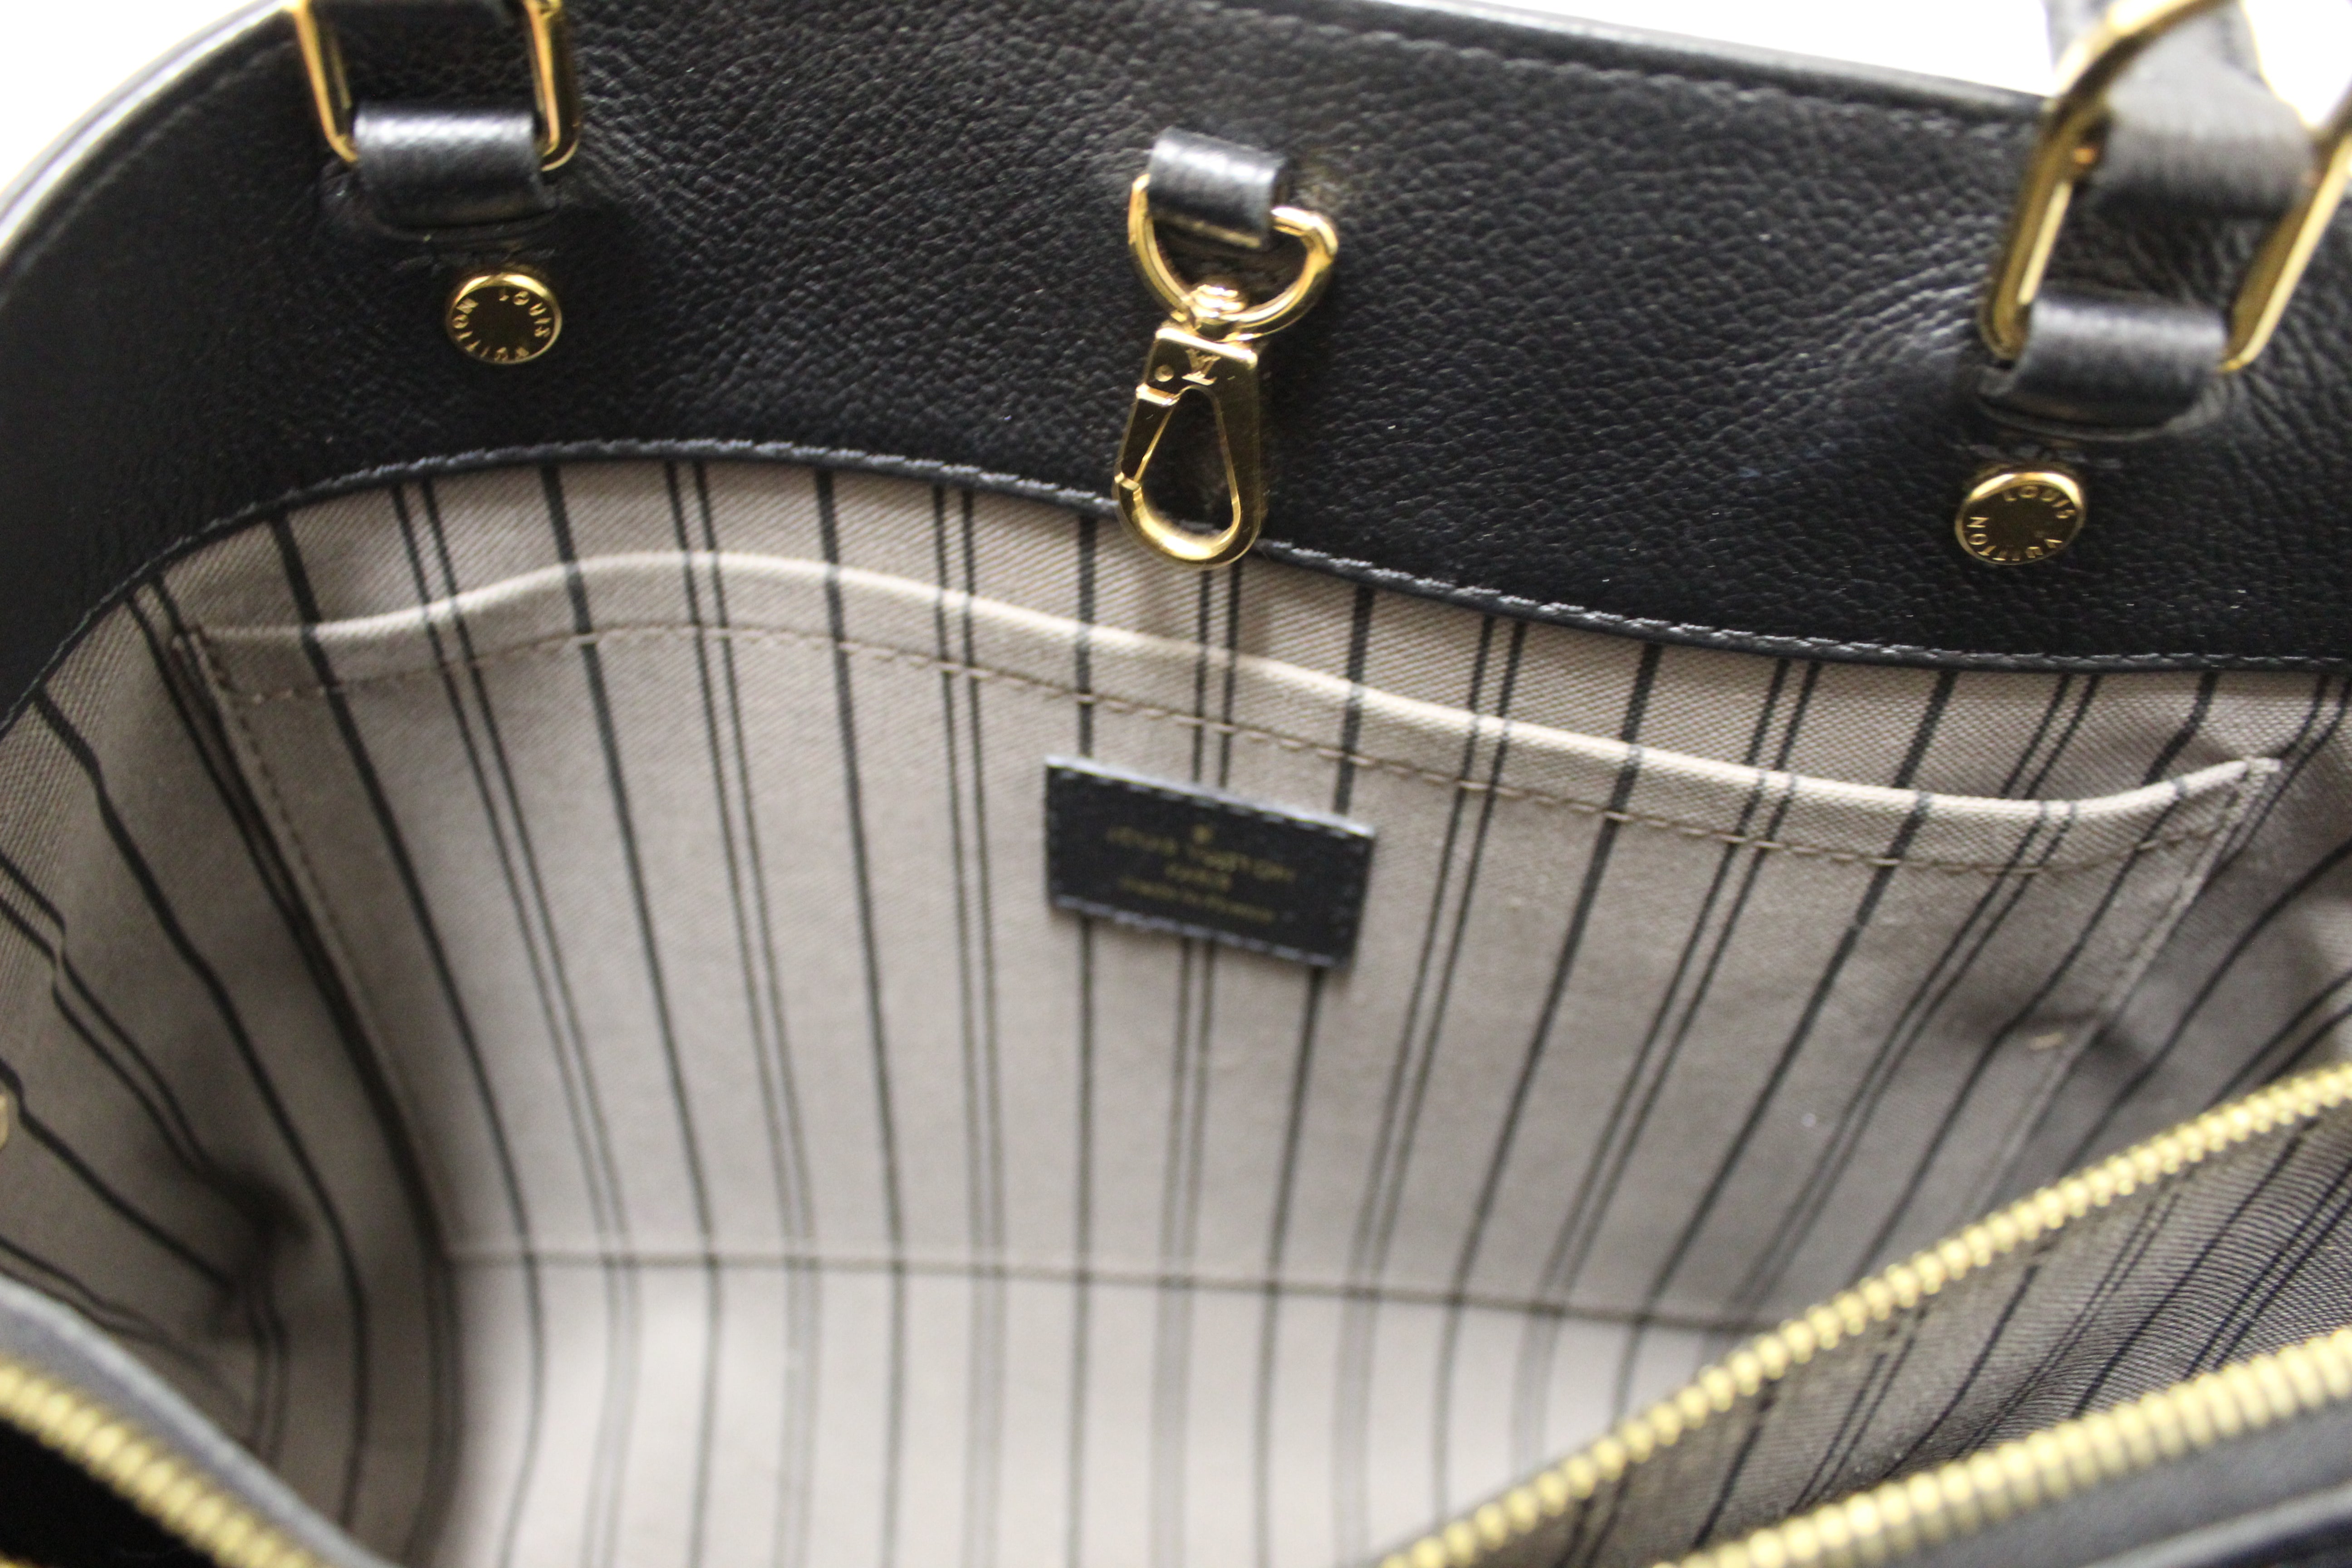 Authentic Louis Vuitton Black Monogram Empreinte Leather Montaigne MM Bag